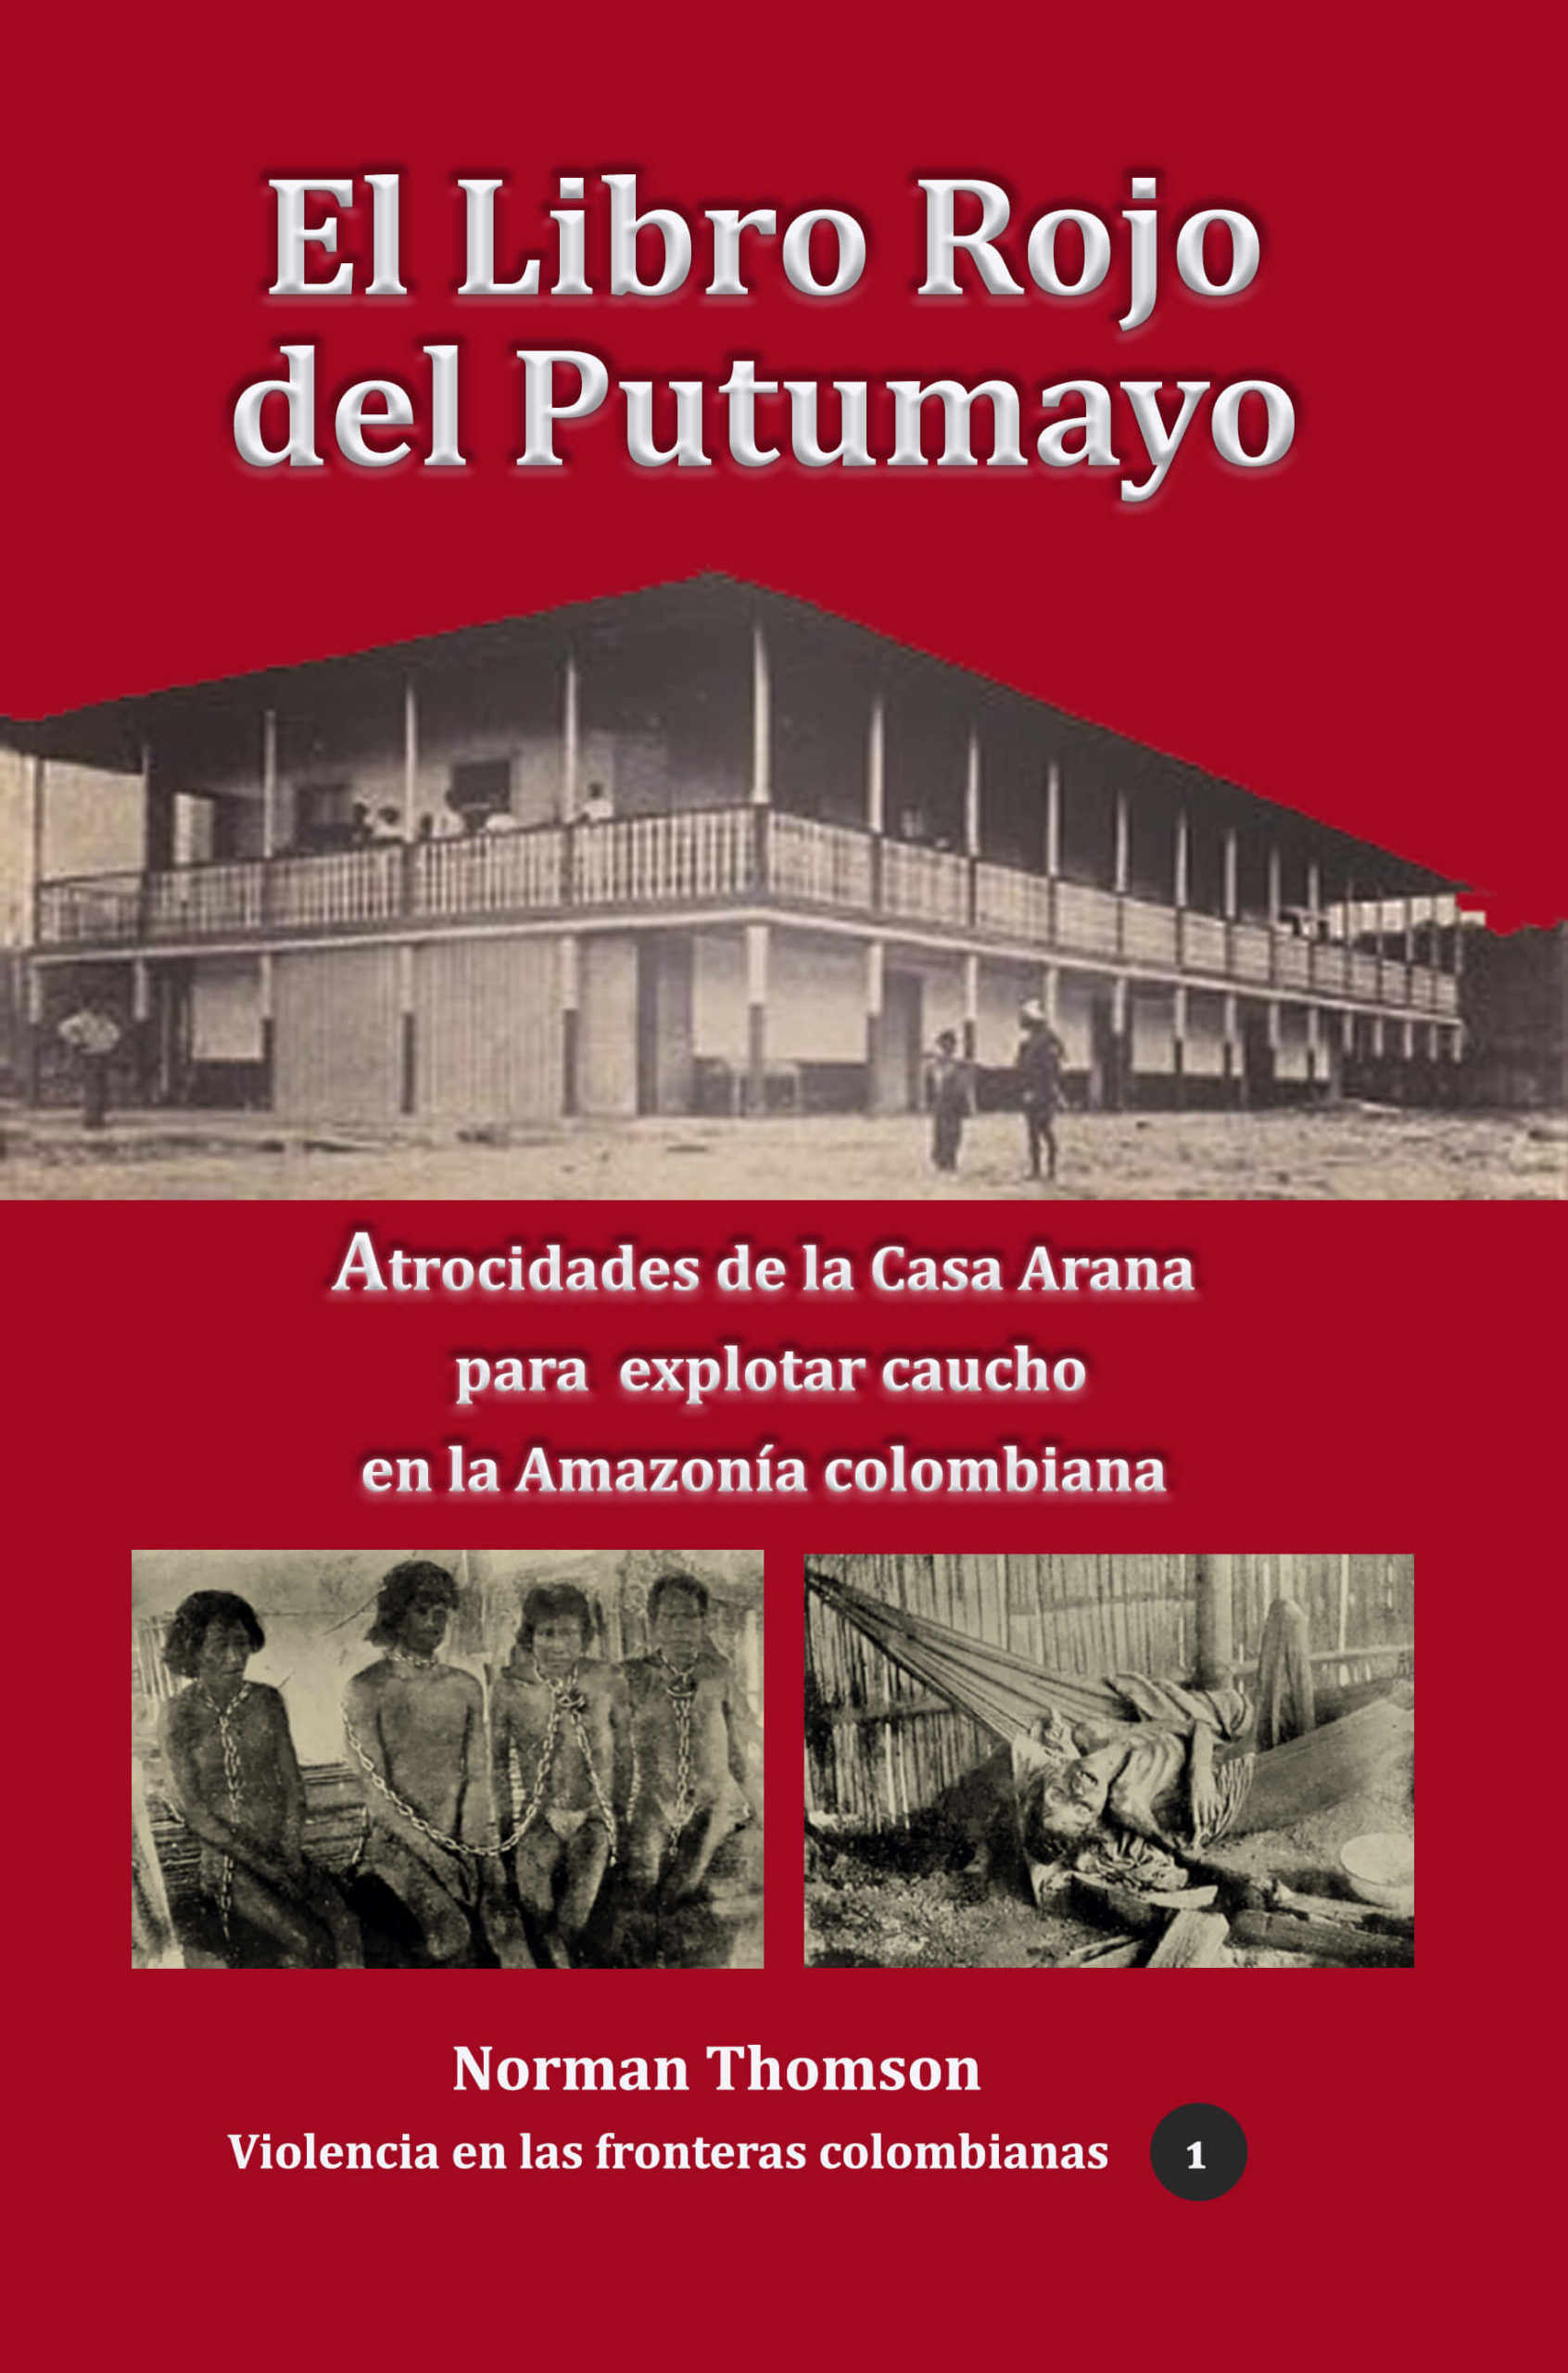 El libro Rojo del Putumayo. Atrocidades de la casa Arana contra indígenas colombianos